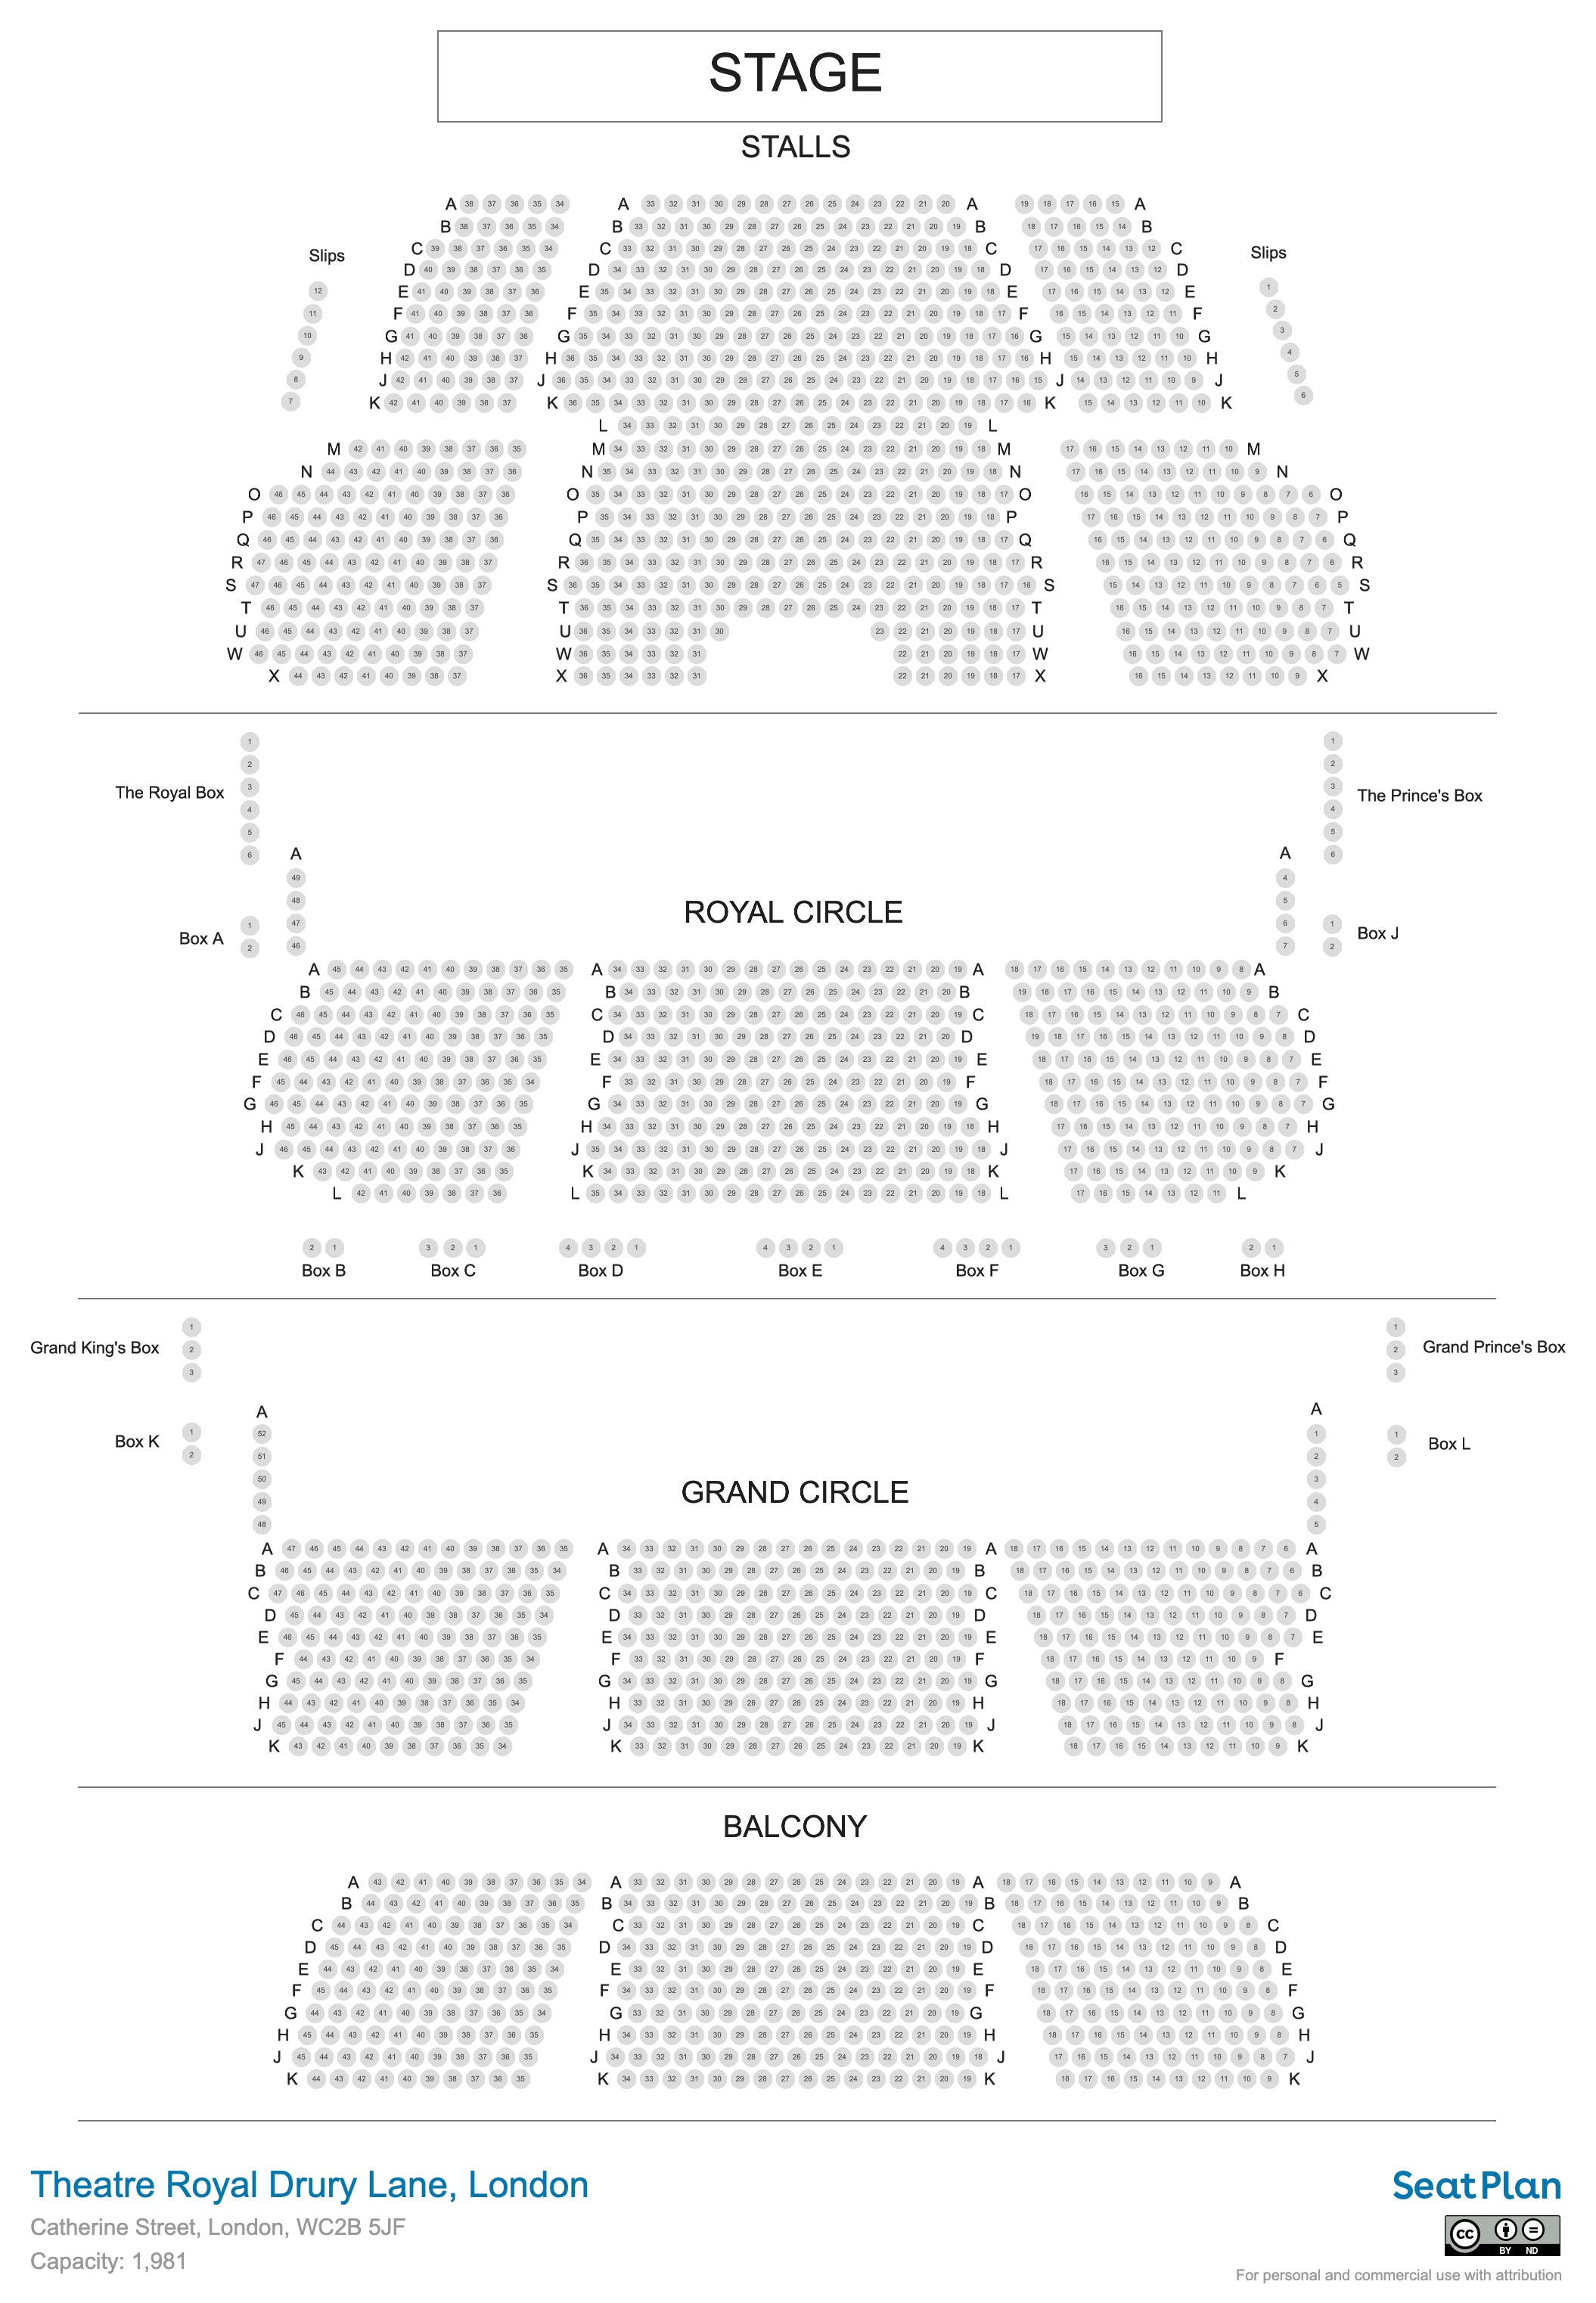 Theatre Royal Drury Lane seating plan